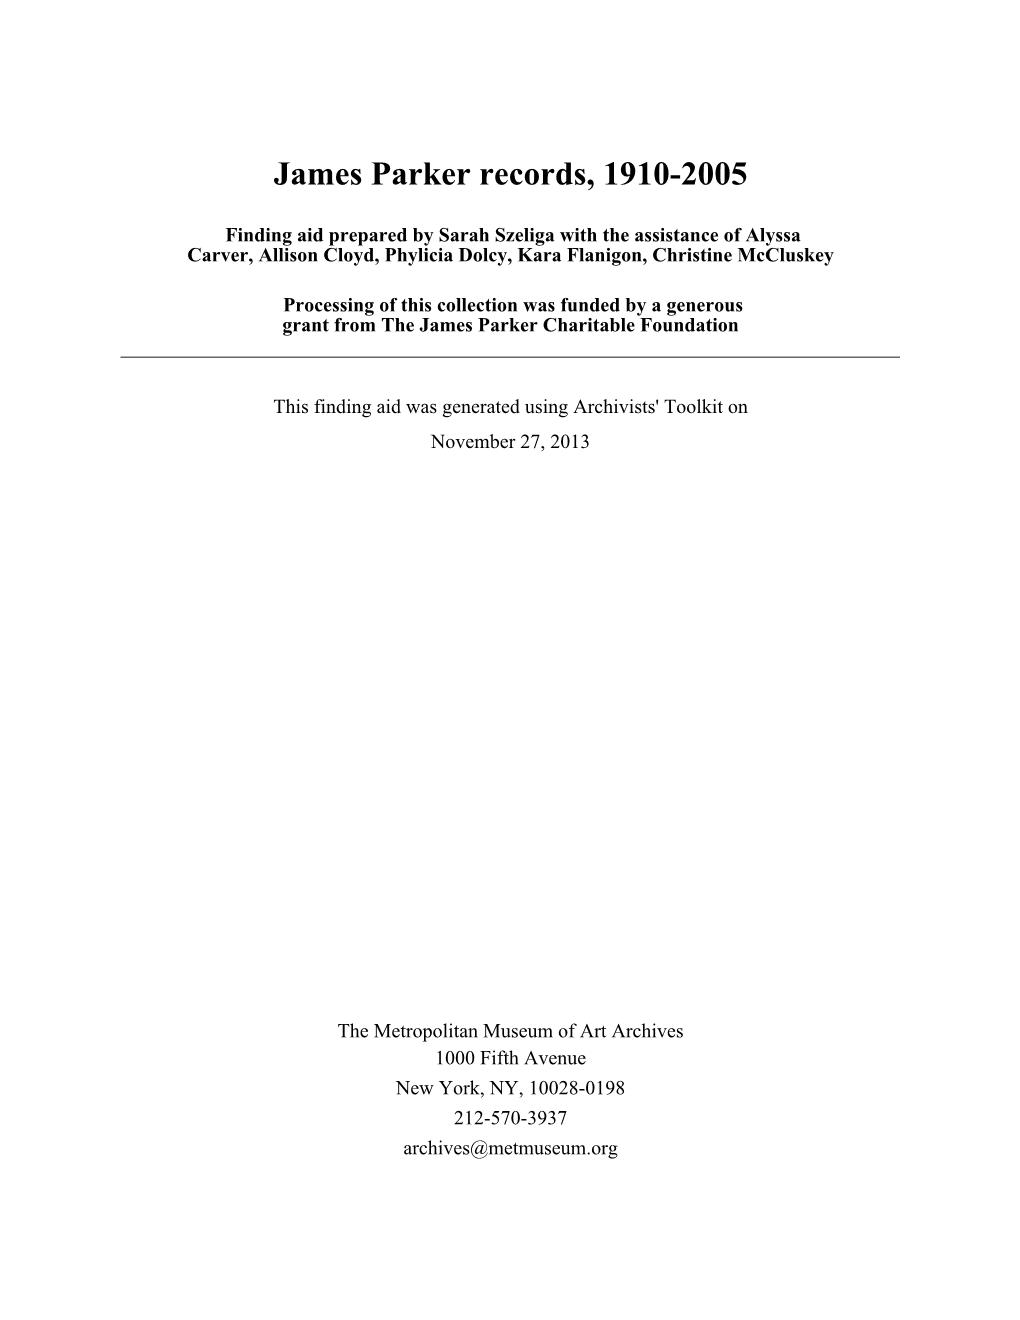 James Parker Records, 1910-2005